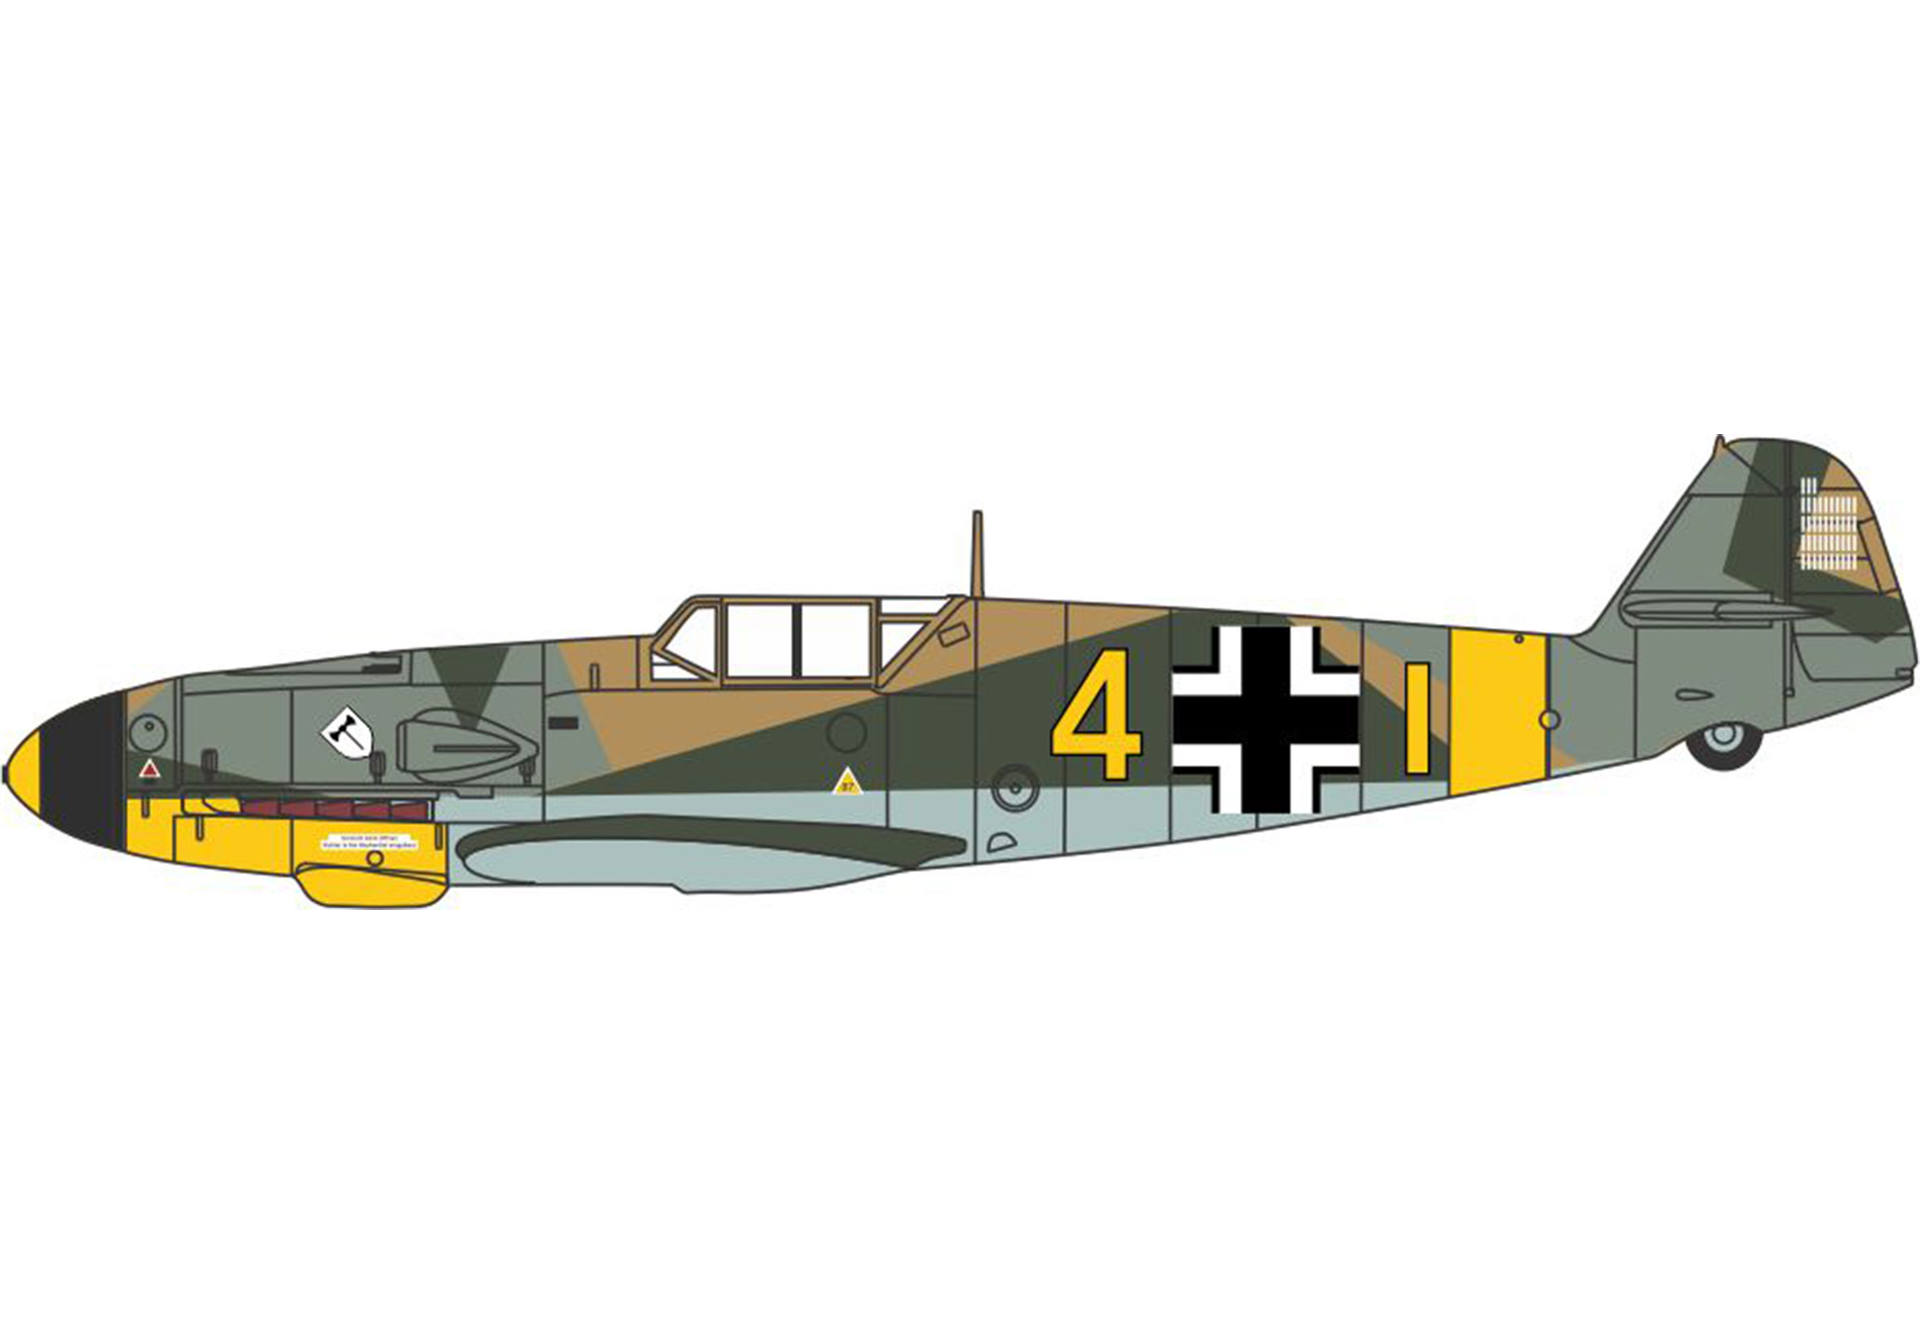 Messerschmitt Bf 109F-4/Trop - 104-victory ace Eberhard von Boremski